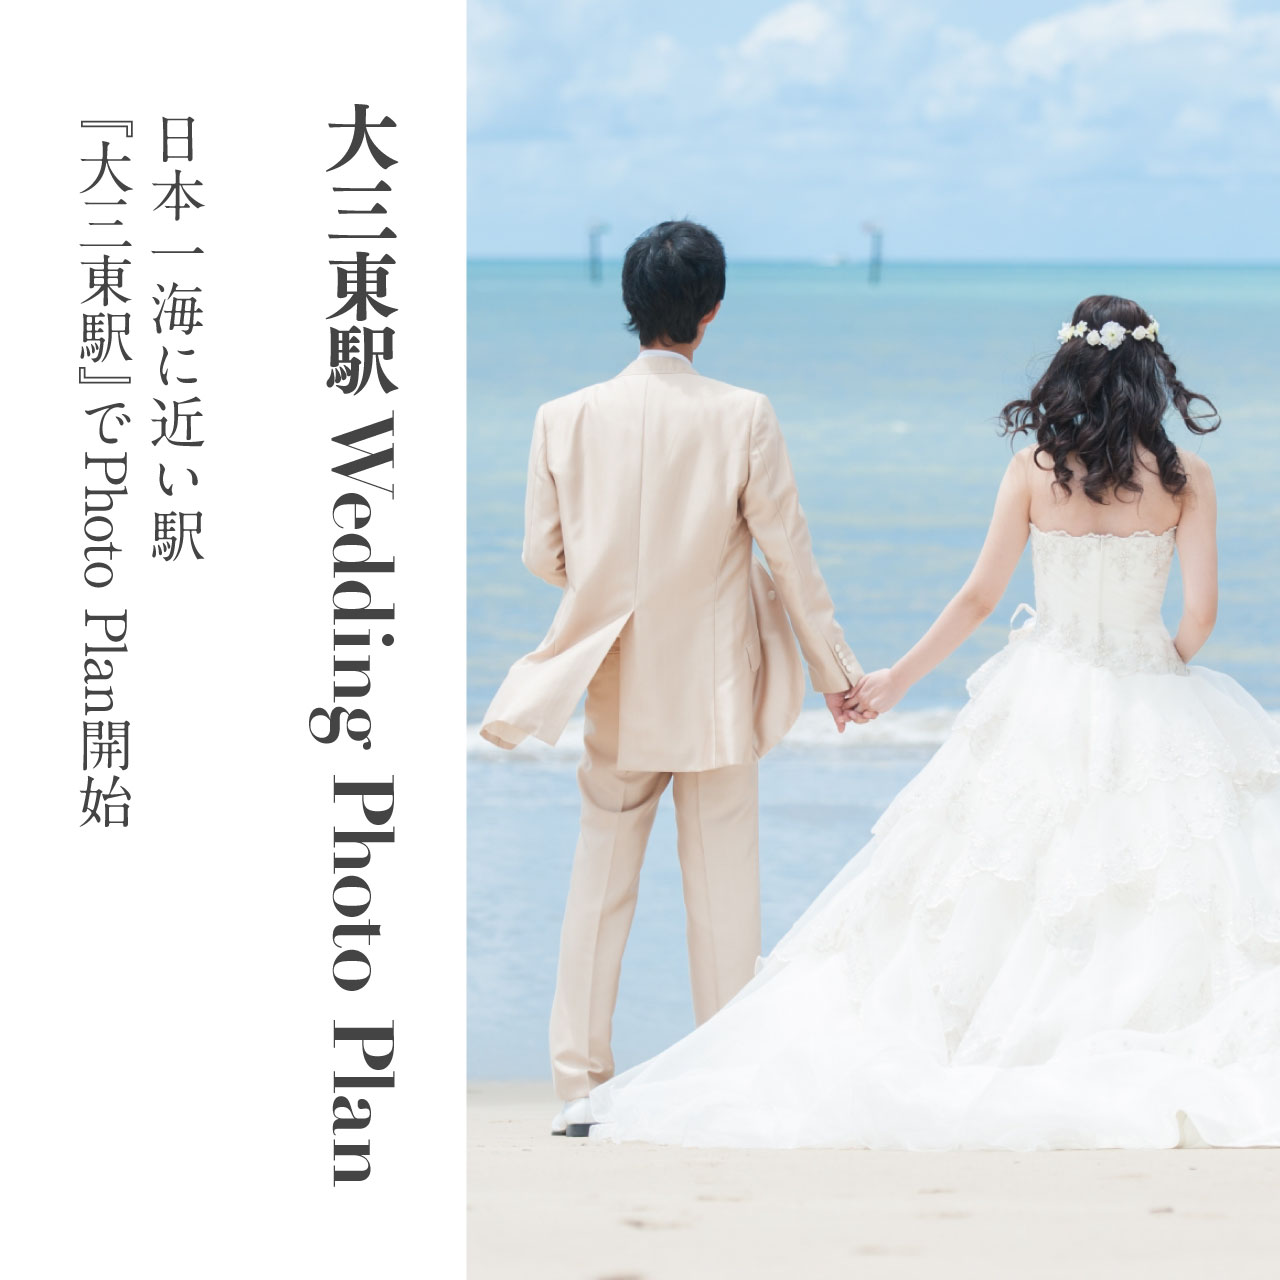 大三東駅 Wedding Photo Plan 日本一海に近い駅『大三東駅』でフォトウェディング